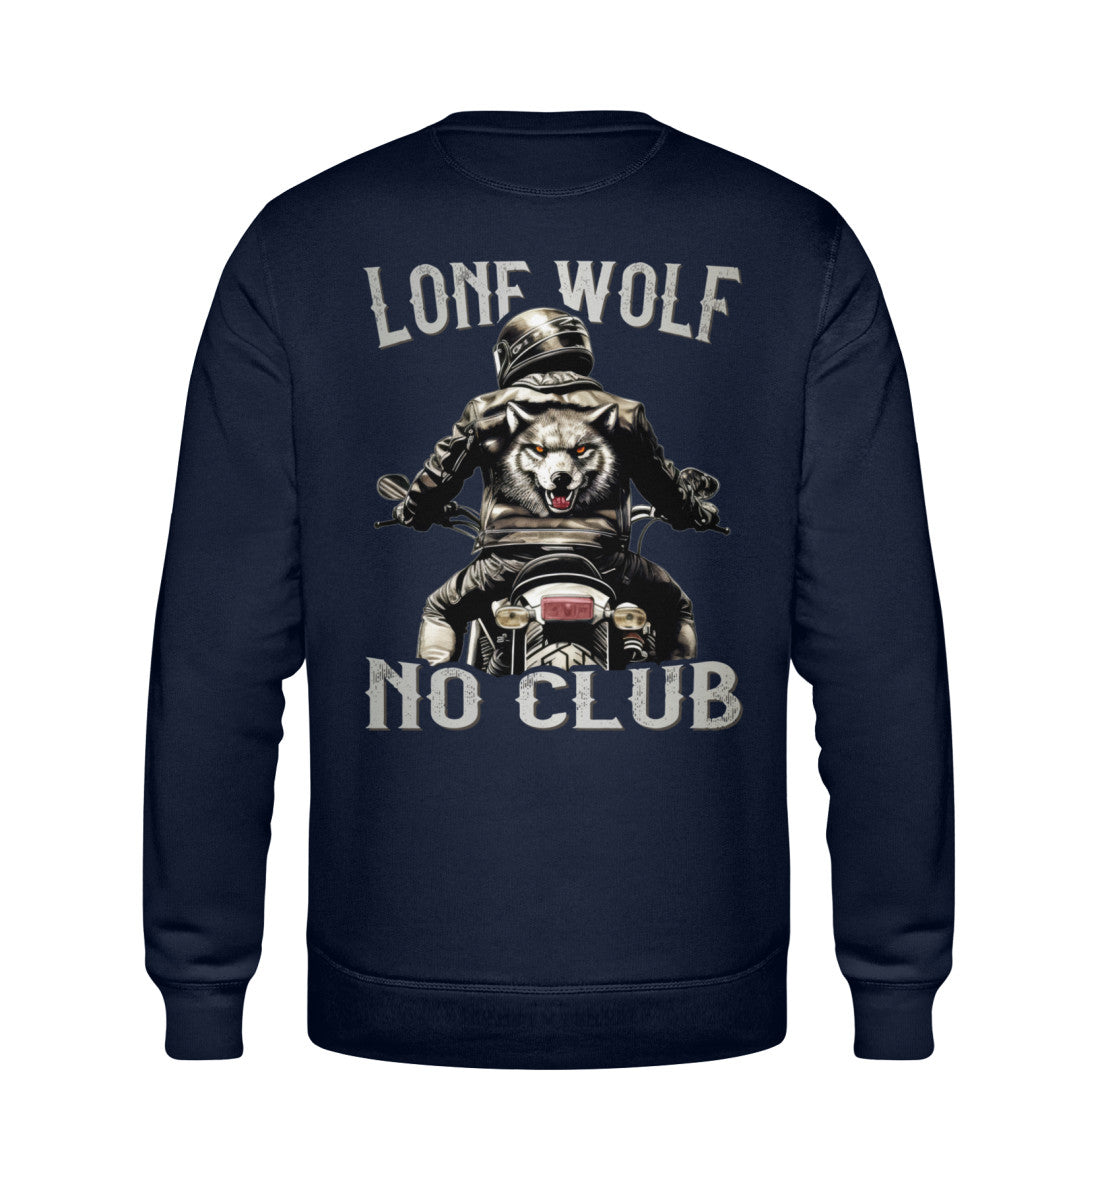 Ein Biker Sweatshirt für Motorradfahrer von Wingbikers mit dem Aufdruck, Lone Wolf - No Club, als Back Print, in navy blau.